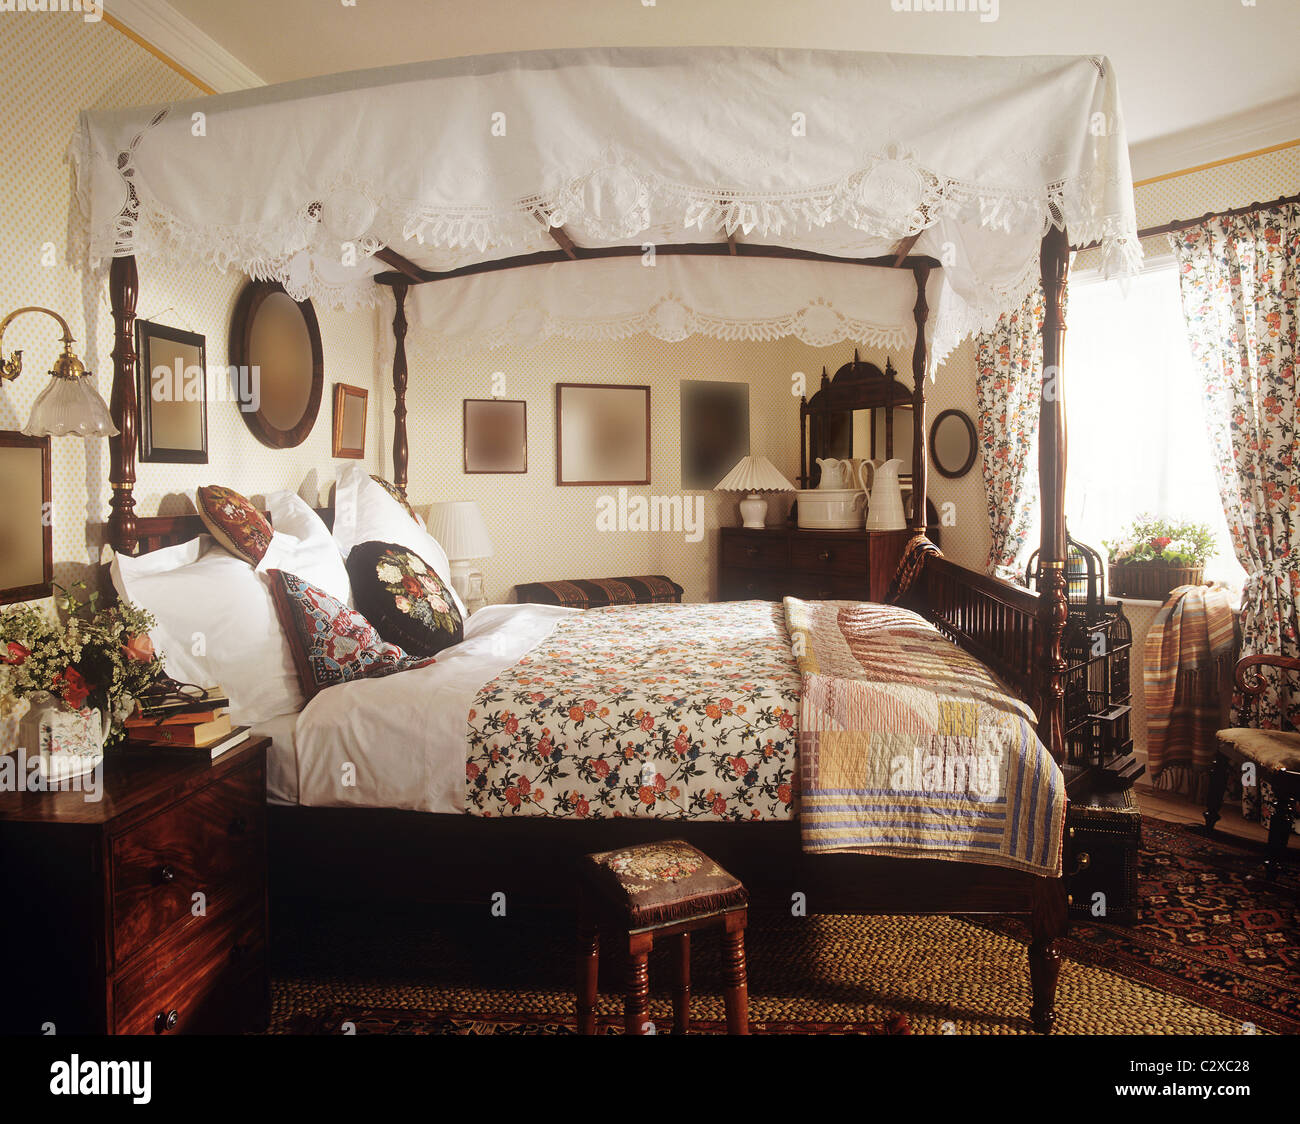 Le style de l'époque lit à baldaquin avec couvre-lit motif floral Banque D'Images